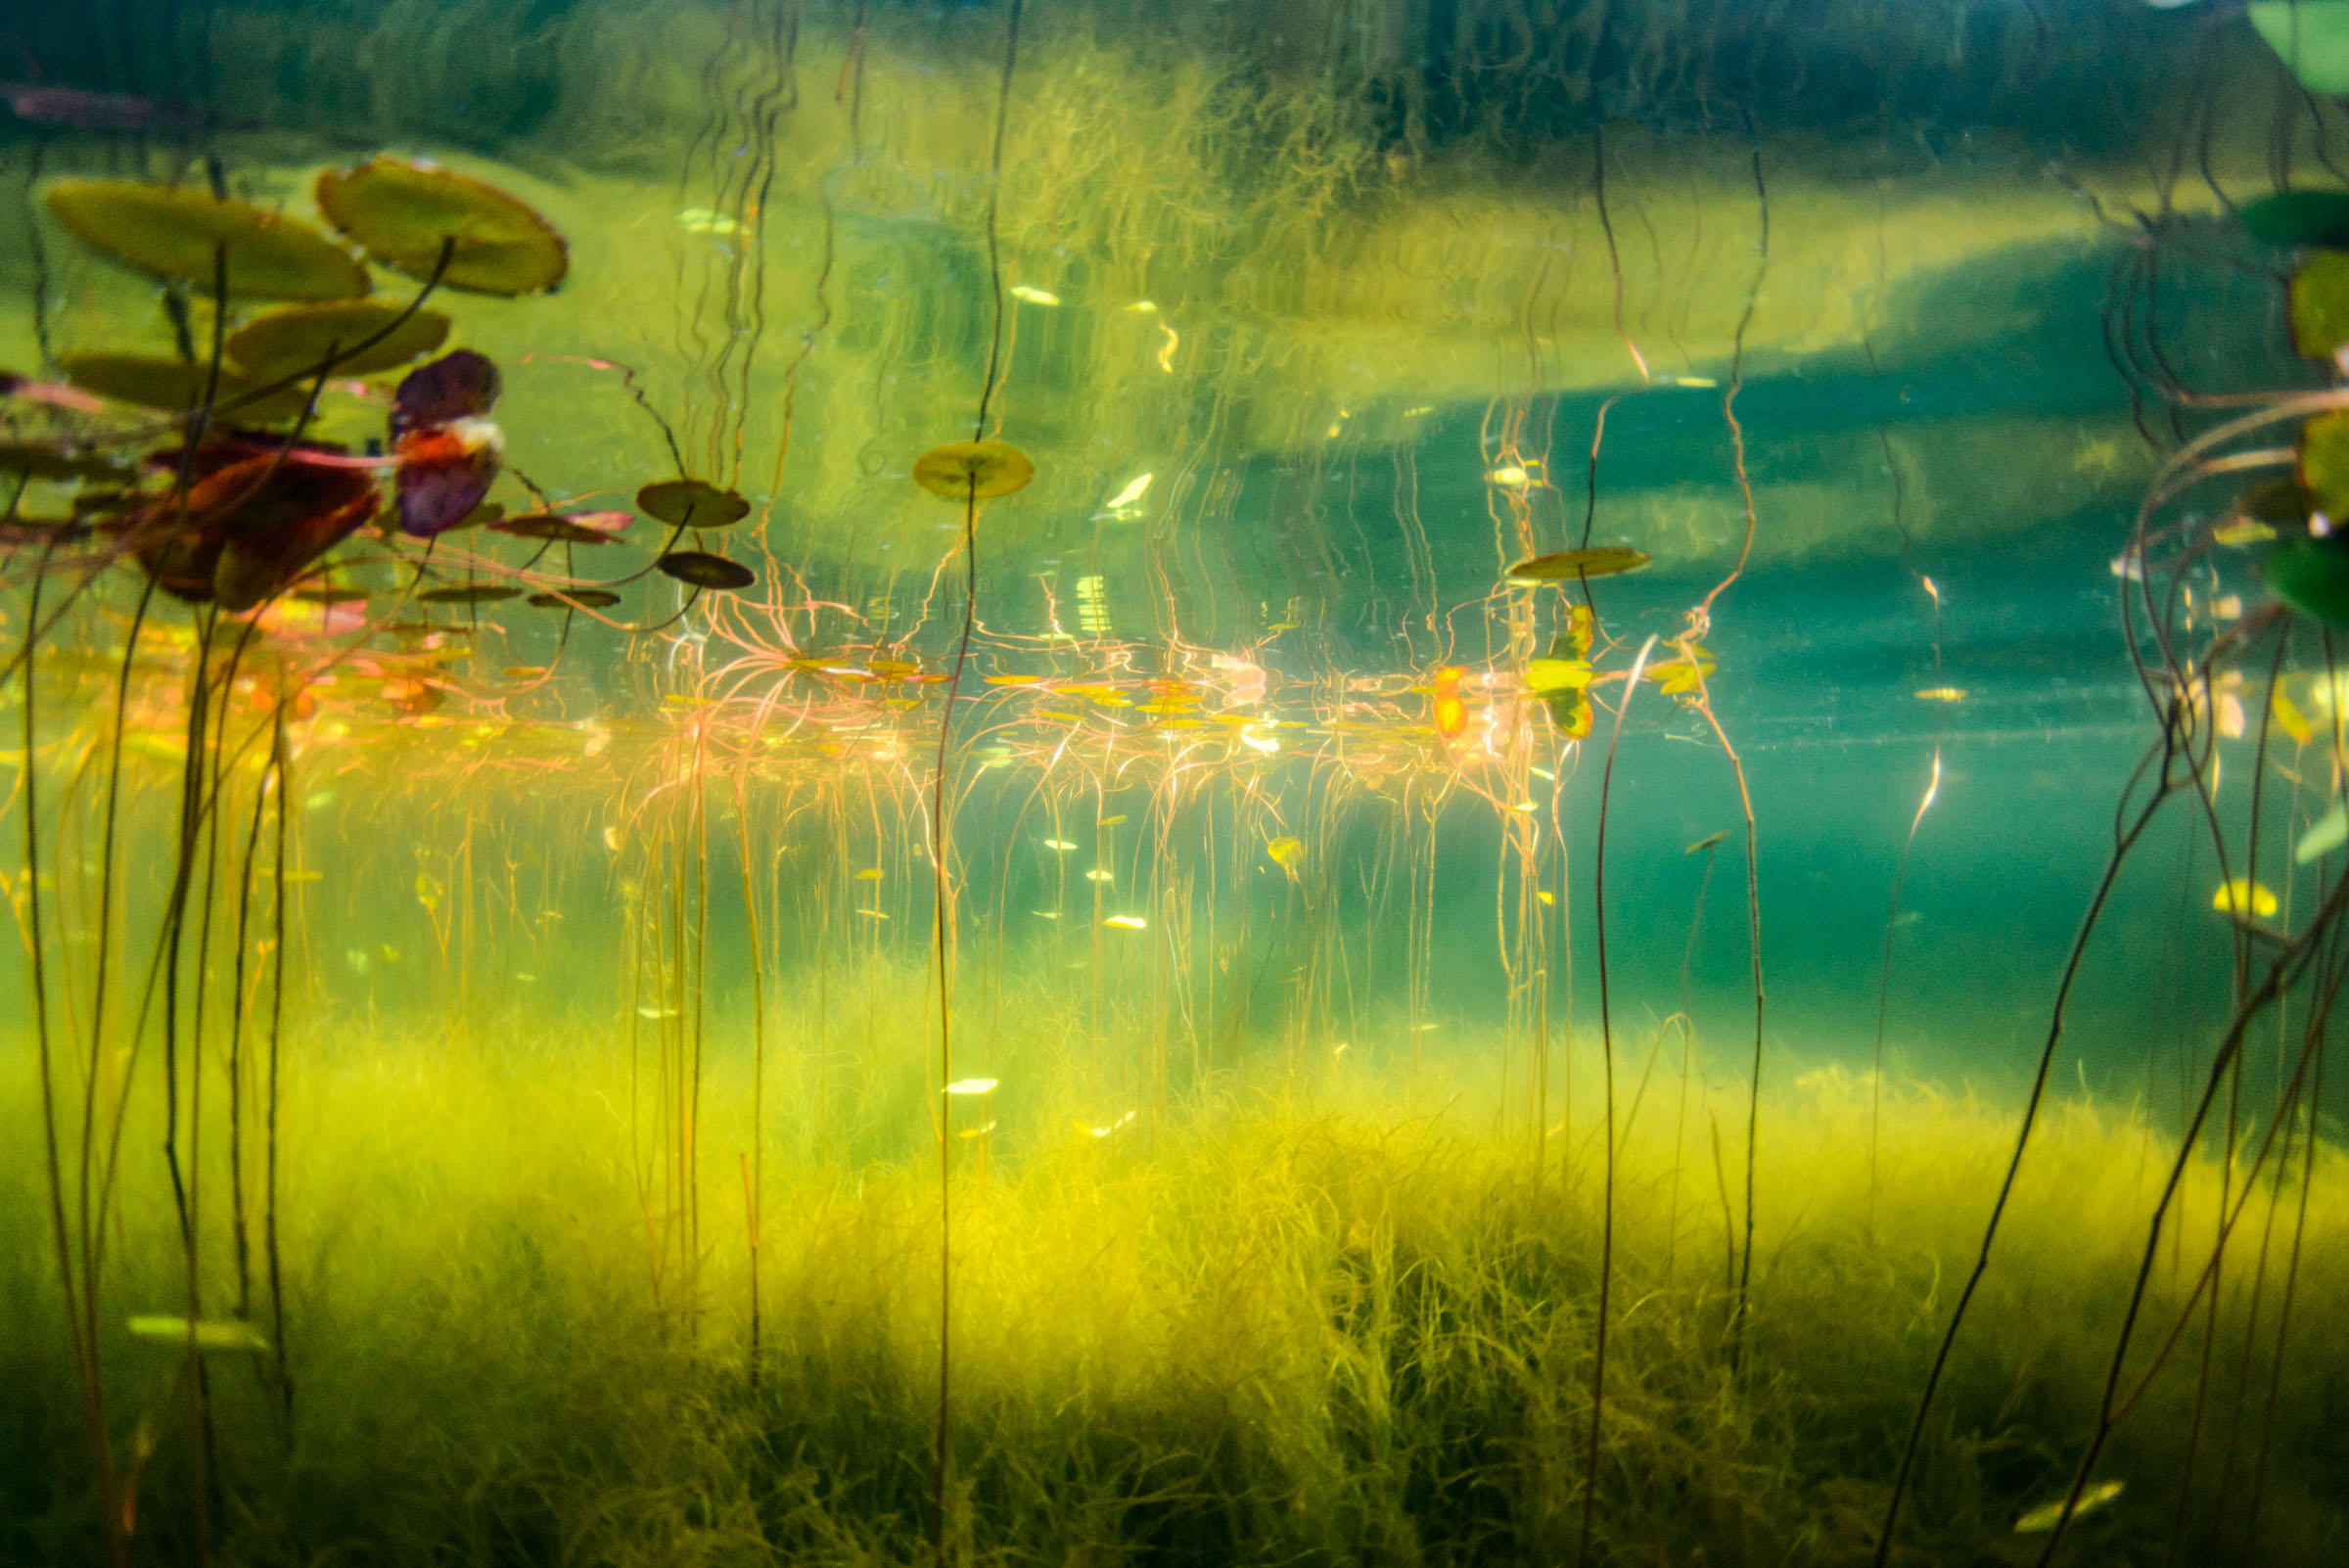 加拿大摄影师eiko jones摄影作品:水下的世界很迷人,让人向往的水下